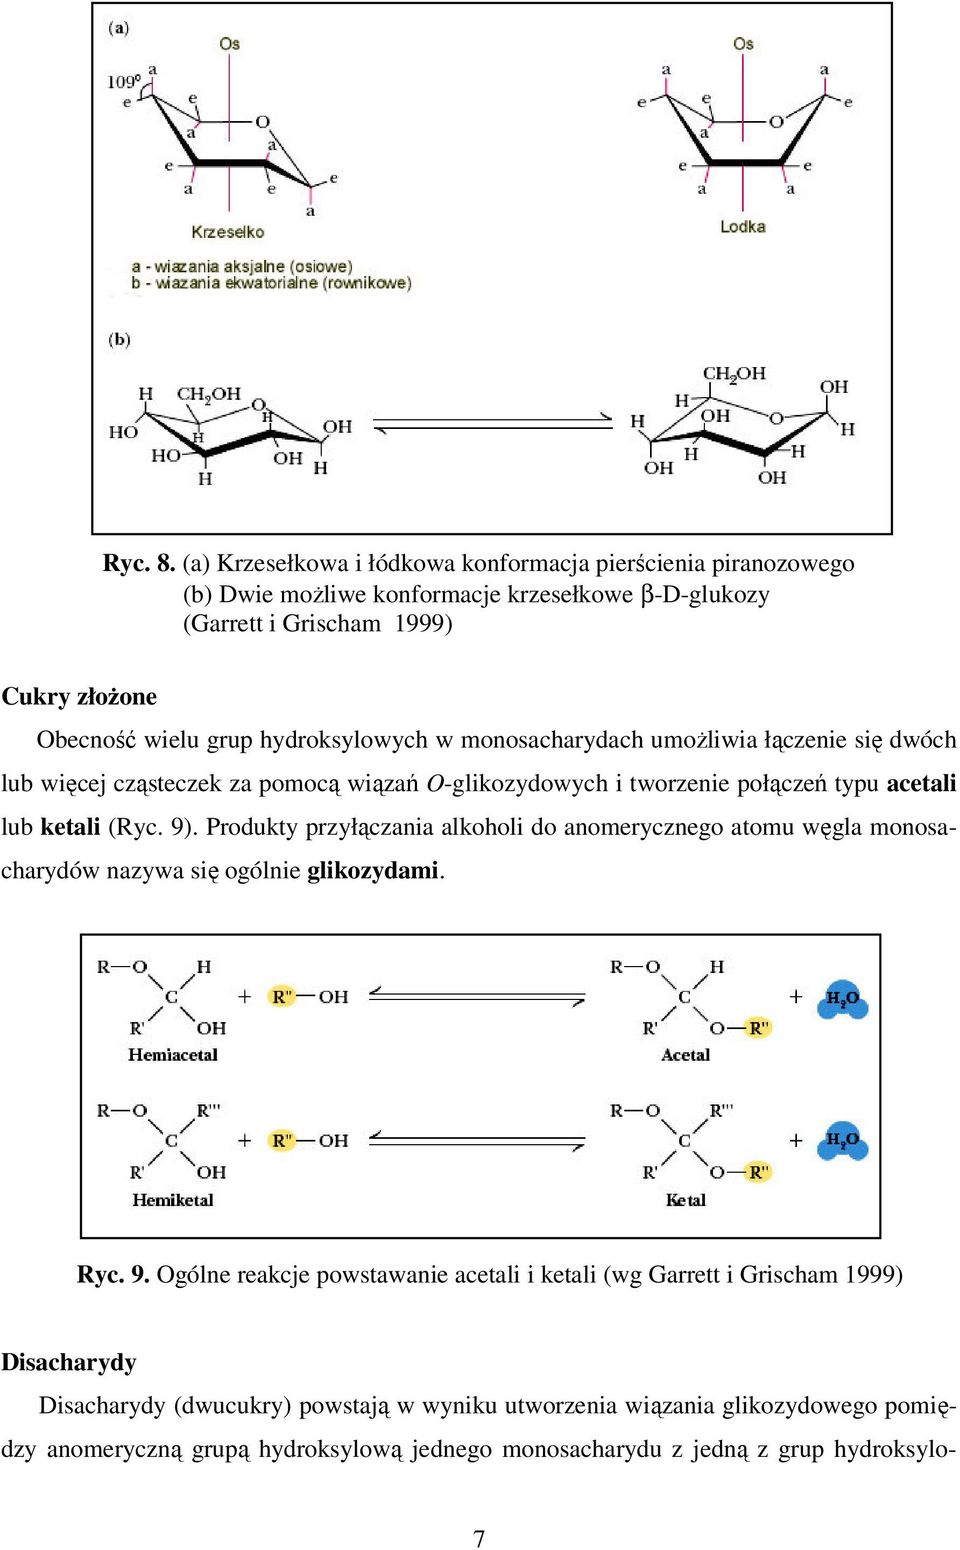 hydroksylowych w monosacharydach umożliwia łączenie się dwóch lub więcej cząsteczek za pomocą wiązań O-glikozydowych i tworzenie połączeń typu acetali lub ketali (Ryc. 9).